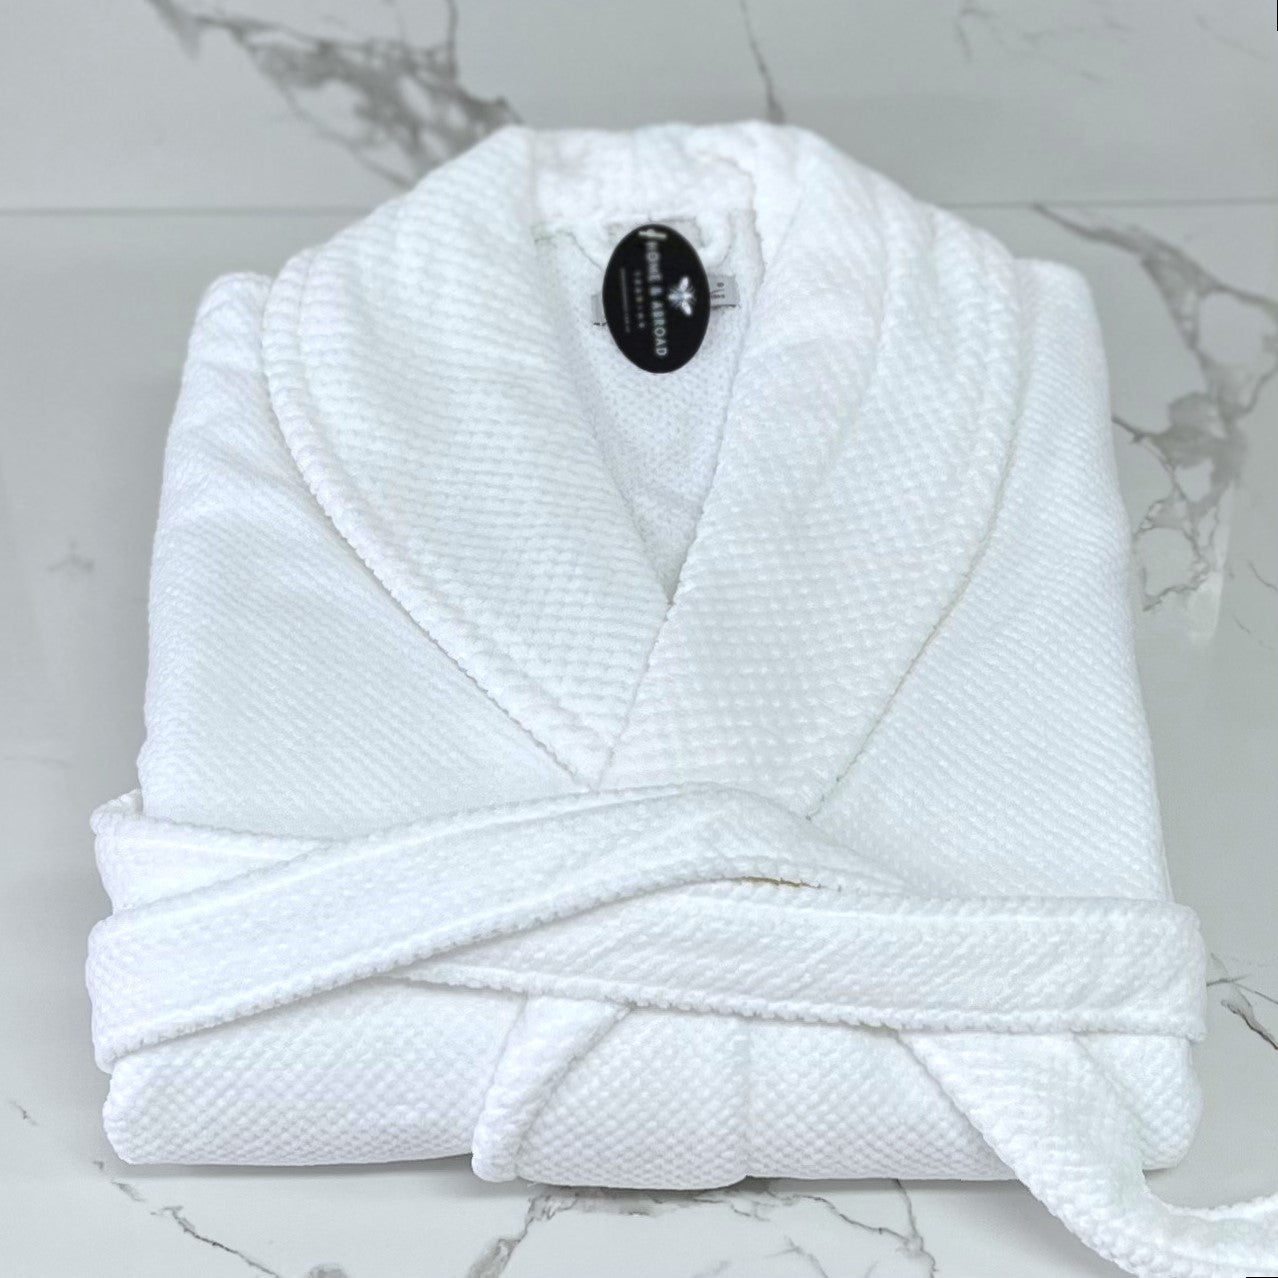 Spa Range White Bath Robe Small